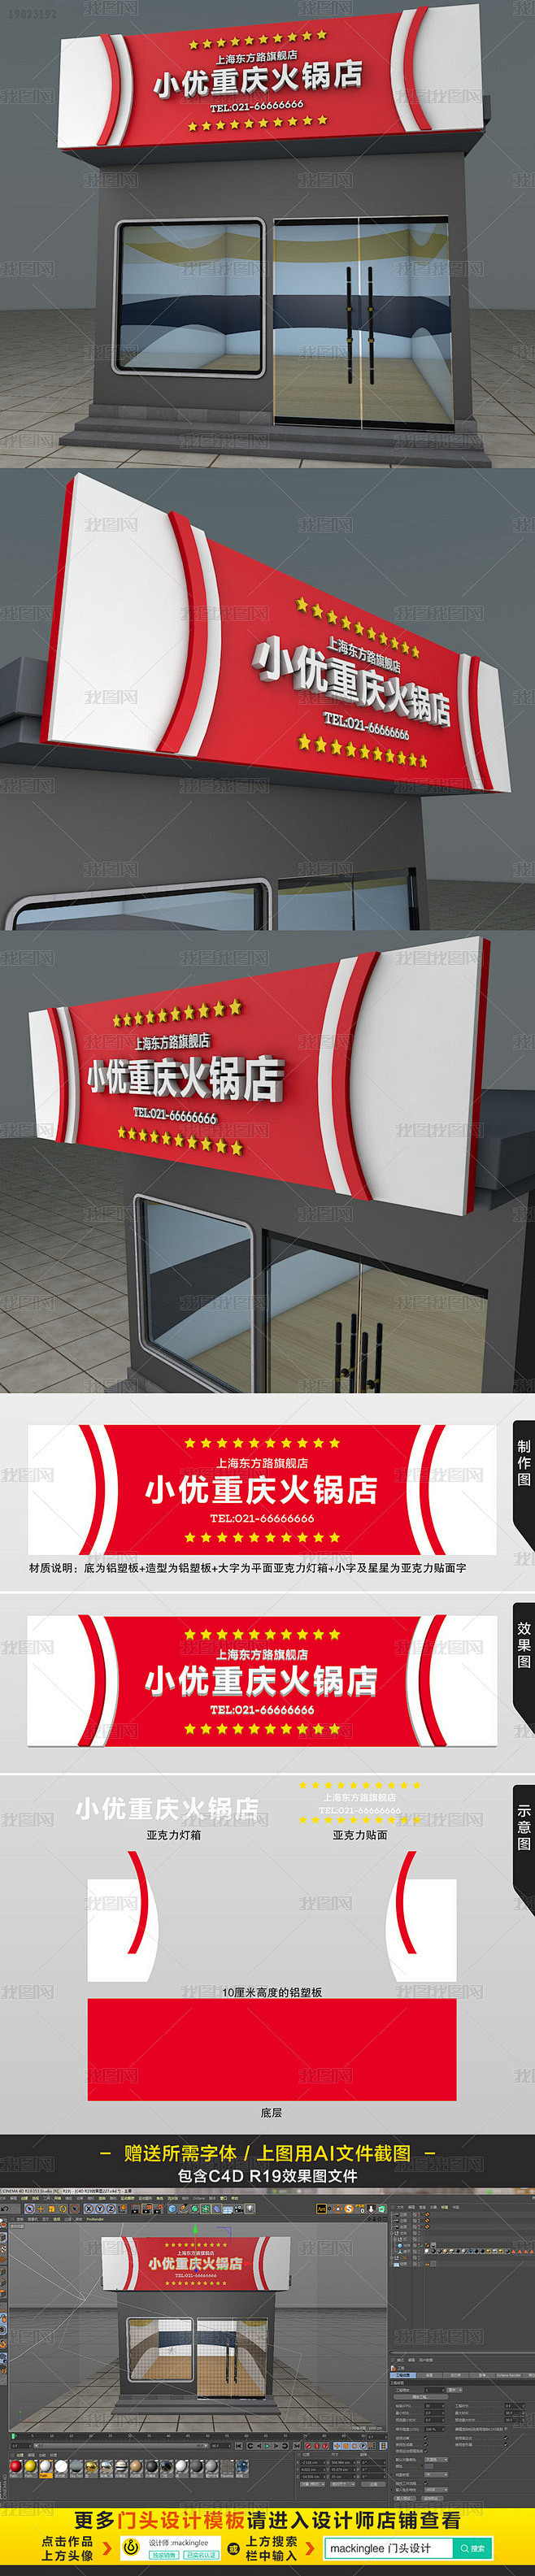 红色高档重庆火锅烧烤店门头设计模板